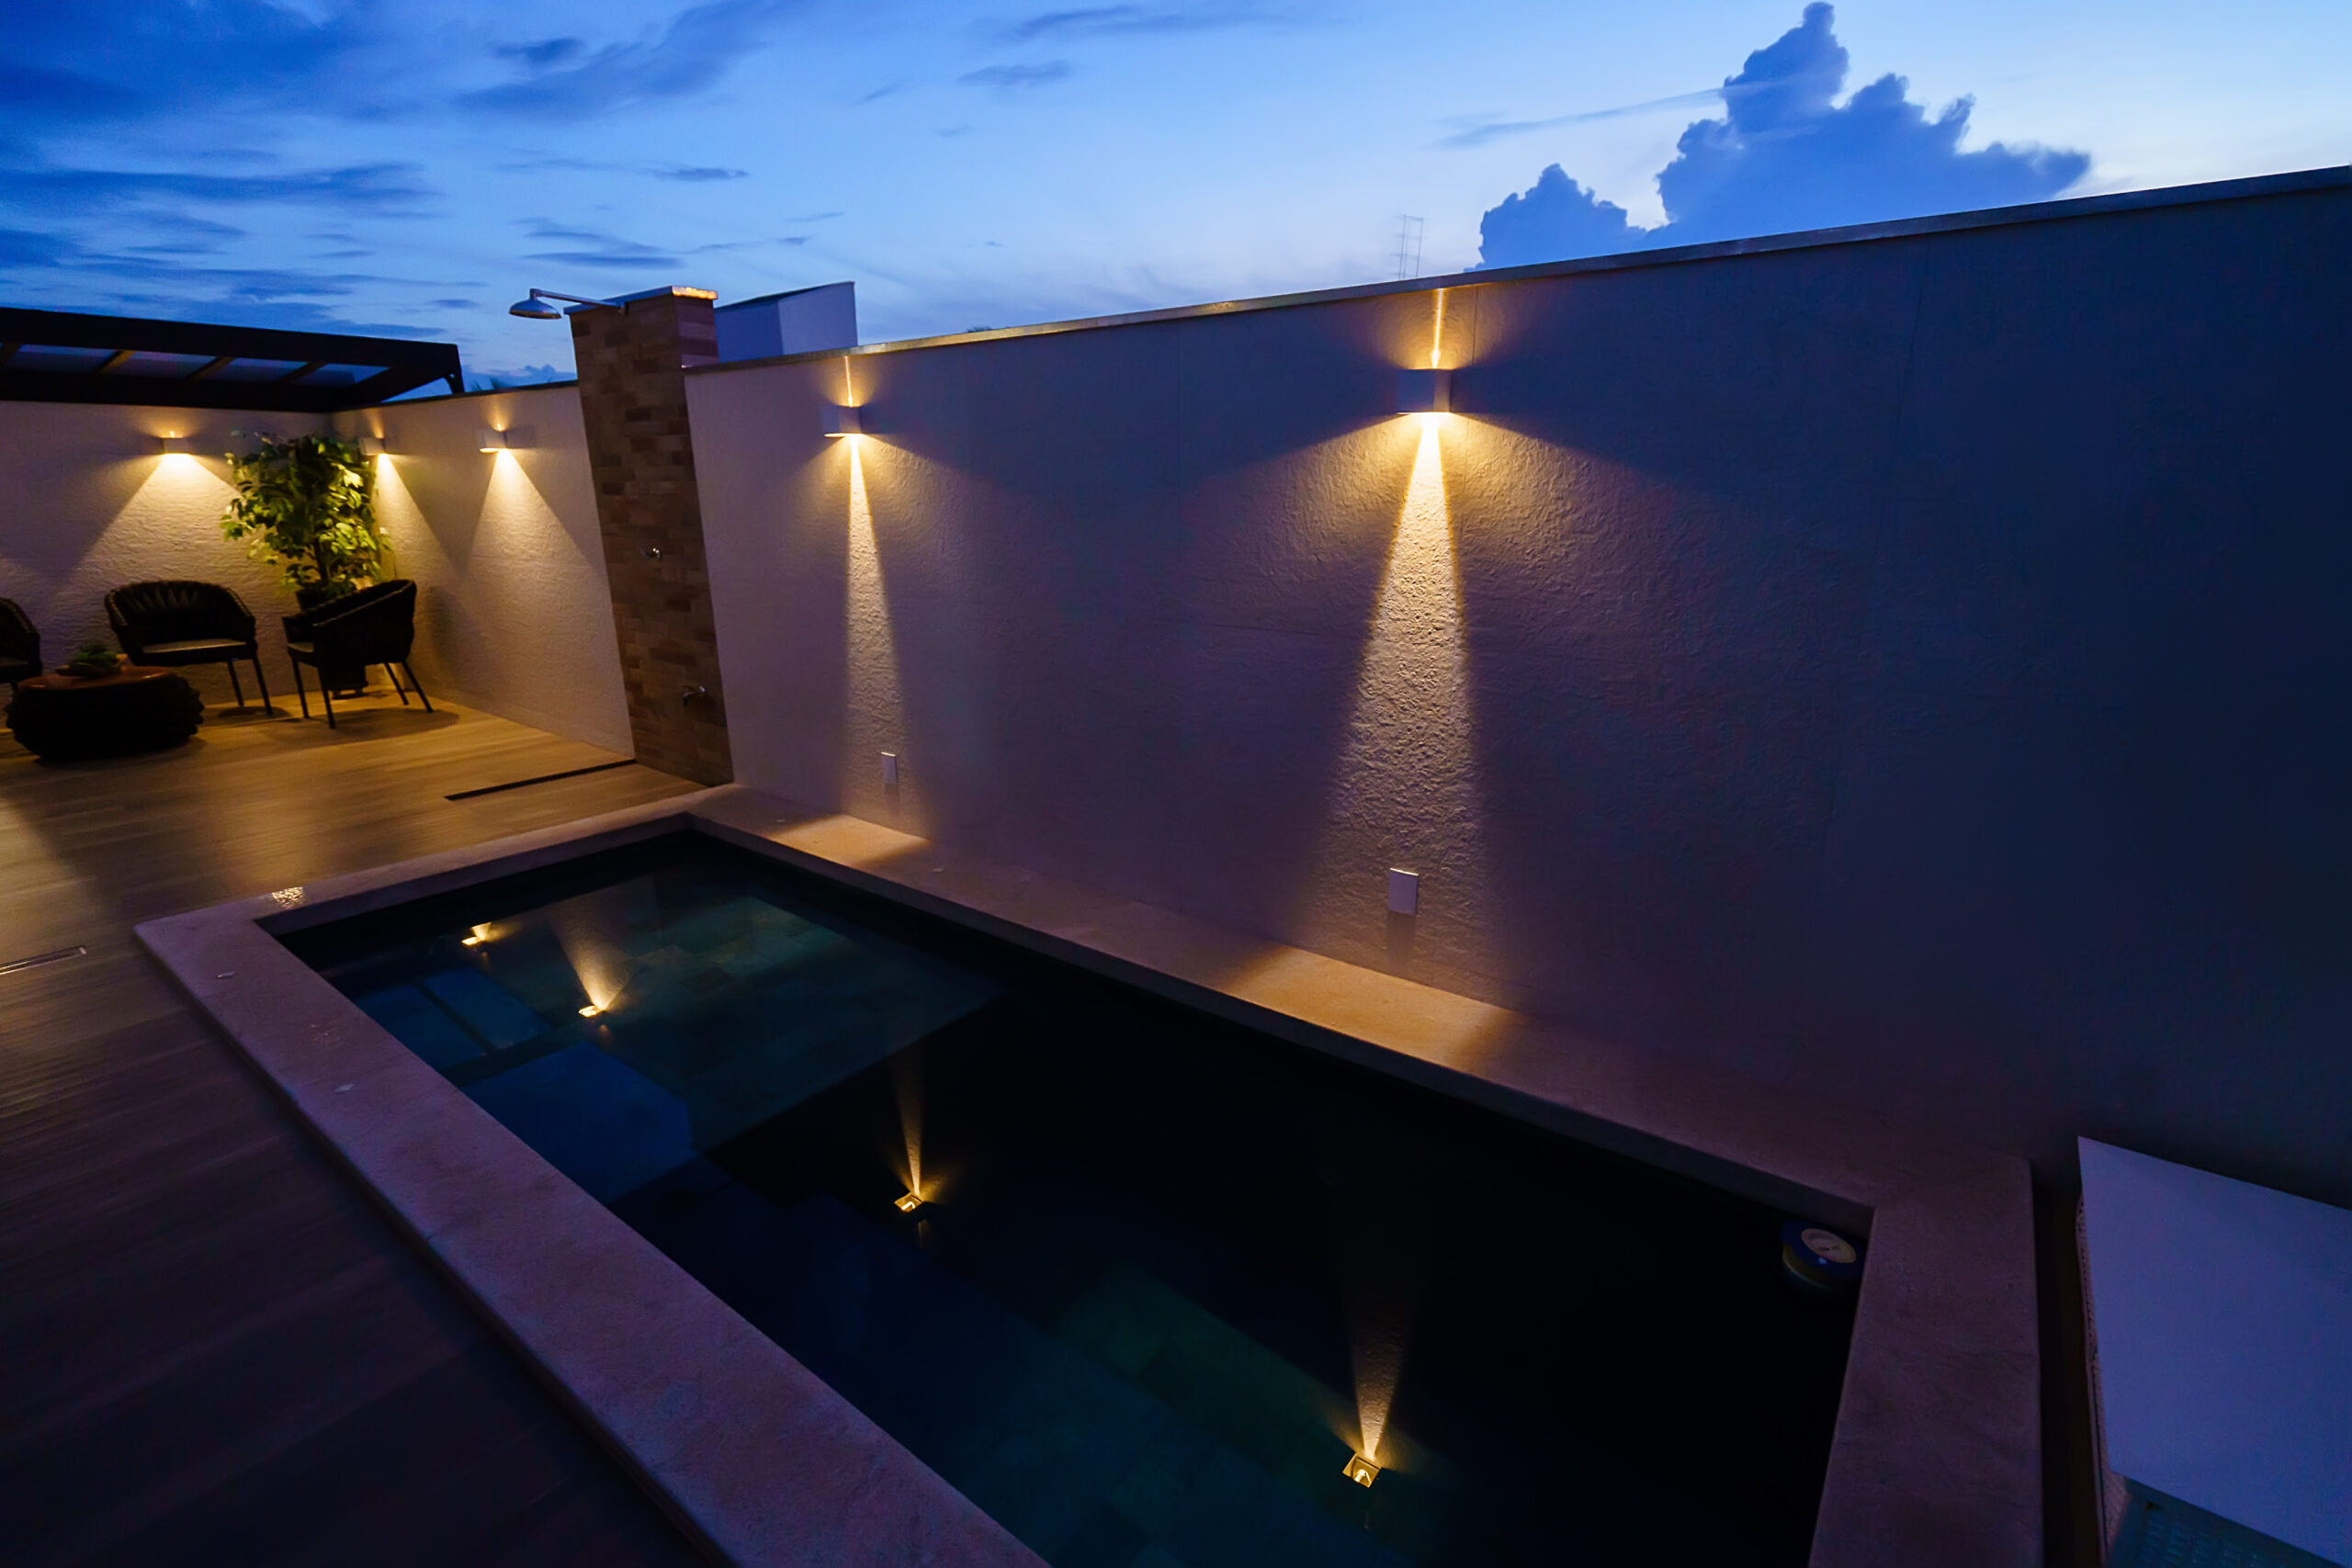 iluminação residencial, área externa, piscina e arandelas iluminando o espaço